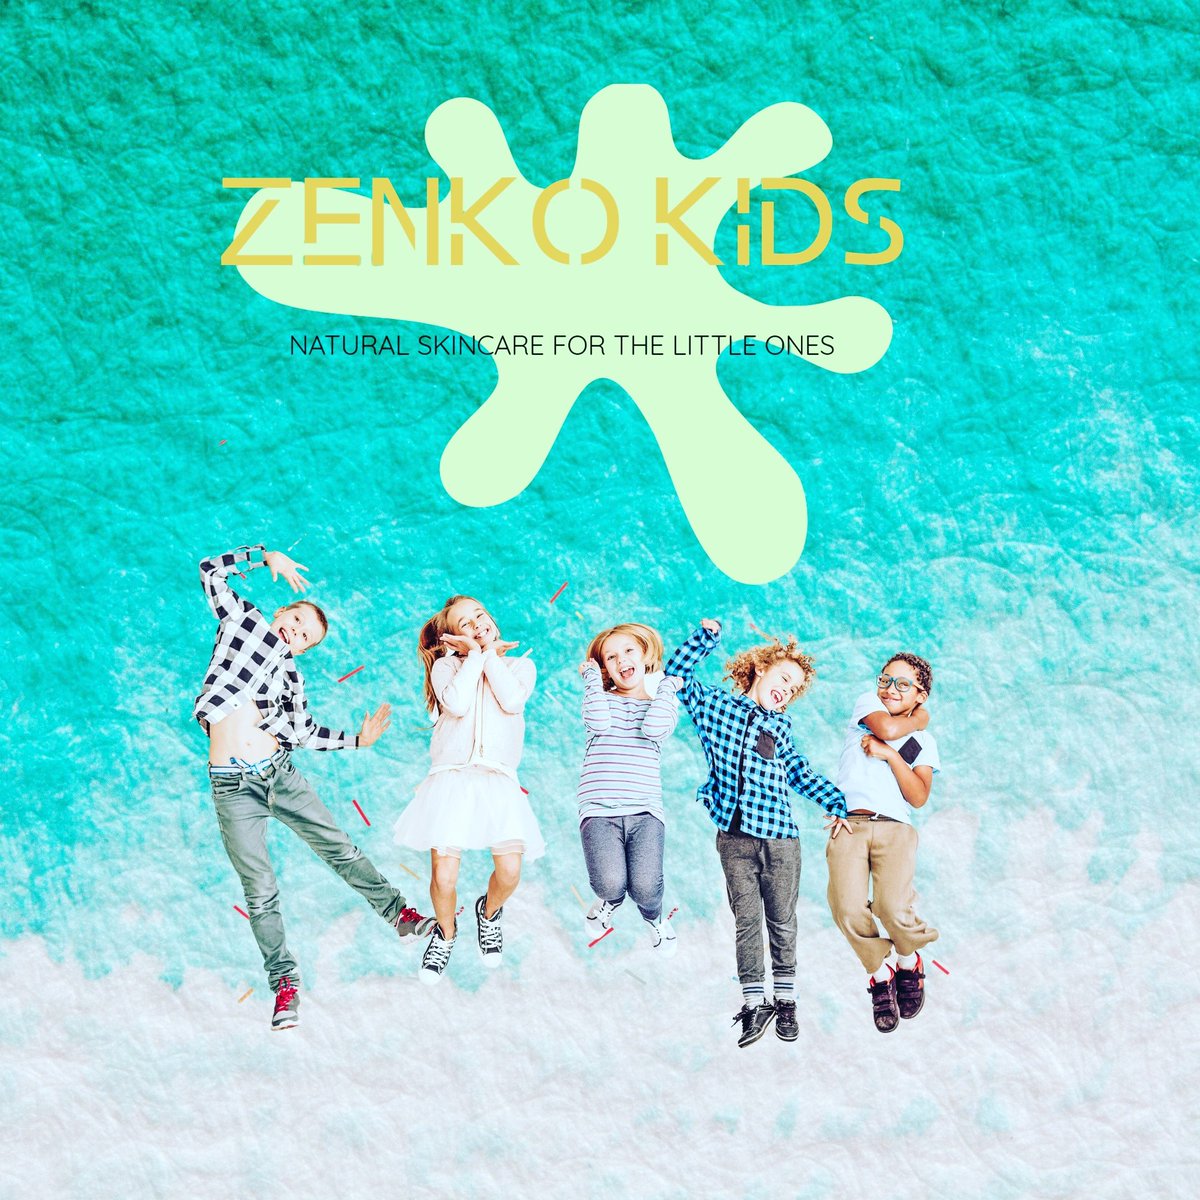 #zenkokids hashtag on Twitter